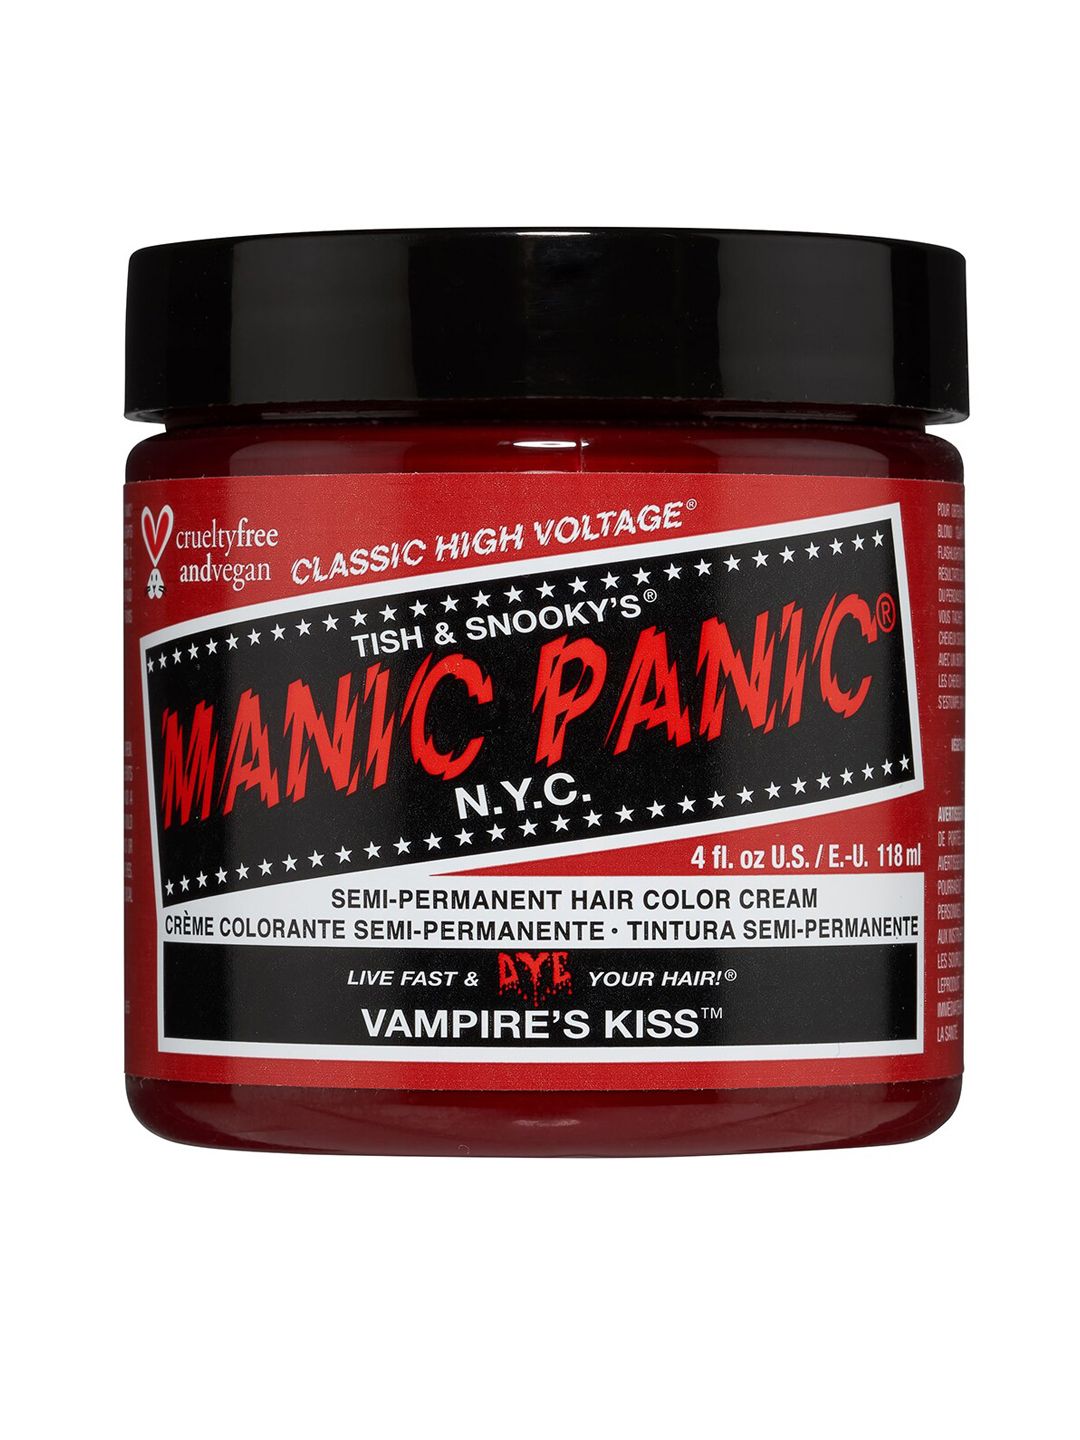 MANIC PANIC Classic High Voltage Semi-Permanent Hair Colour Cream - Vampire's Kiss Price in India